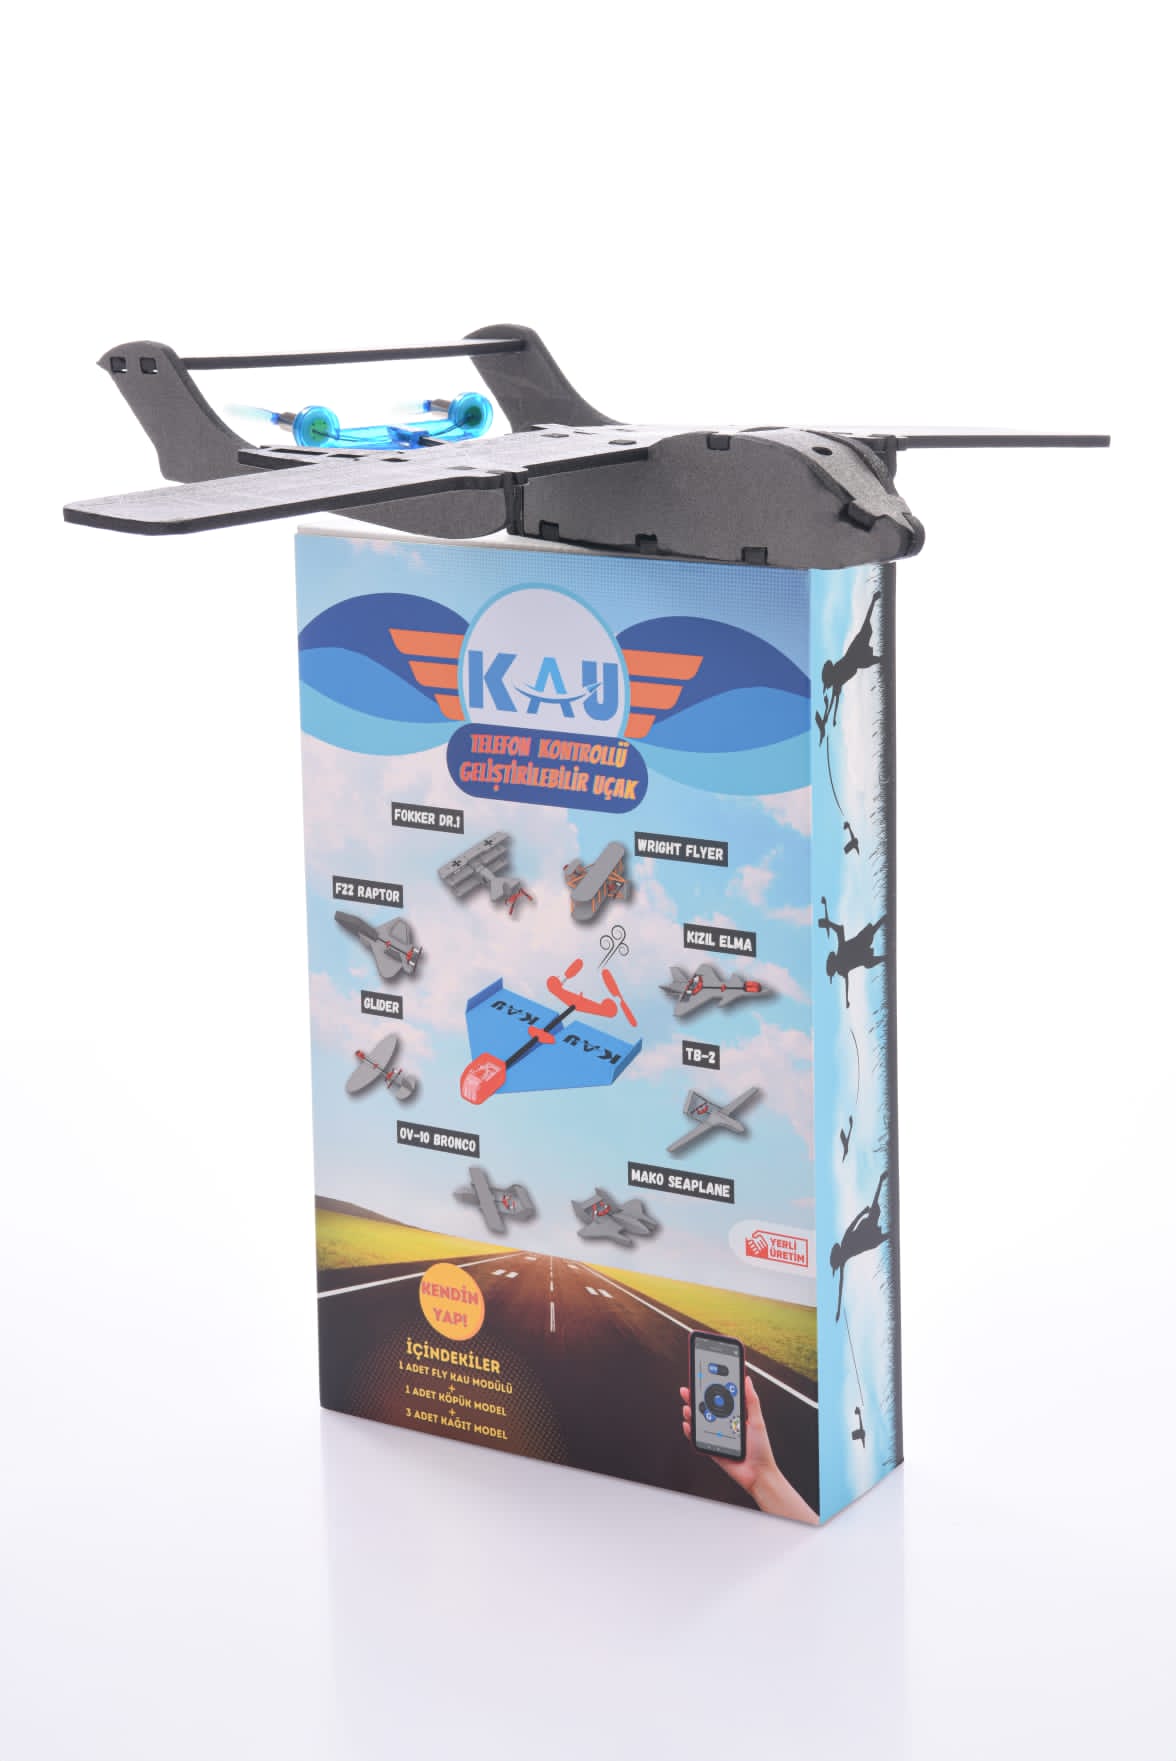 Fly Kau ile Hobi Uçaklarınız Artık Sınırlarını Aşıyor